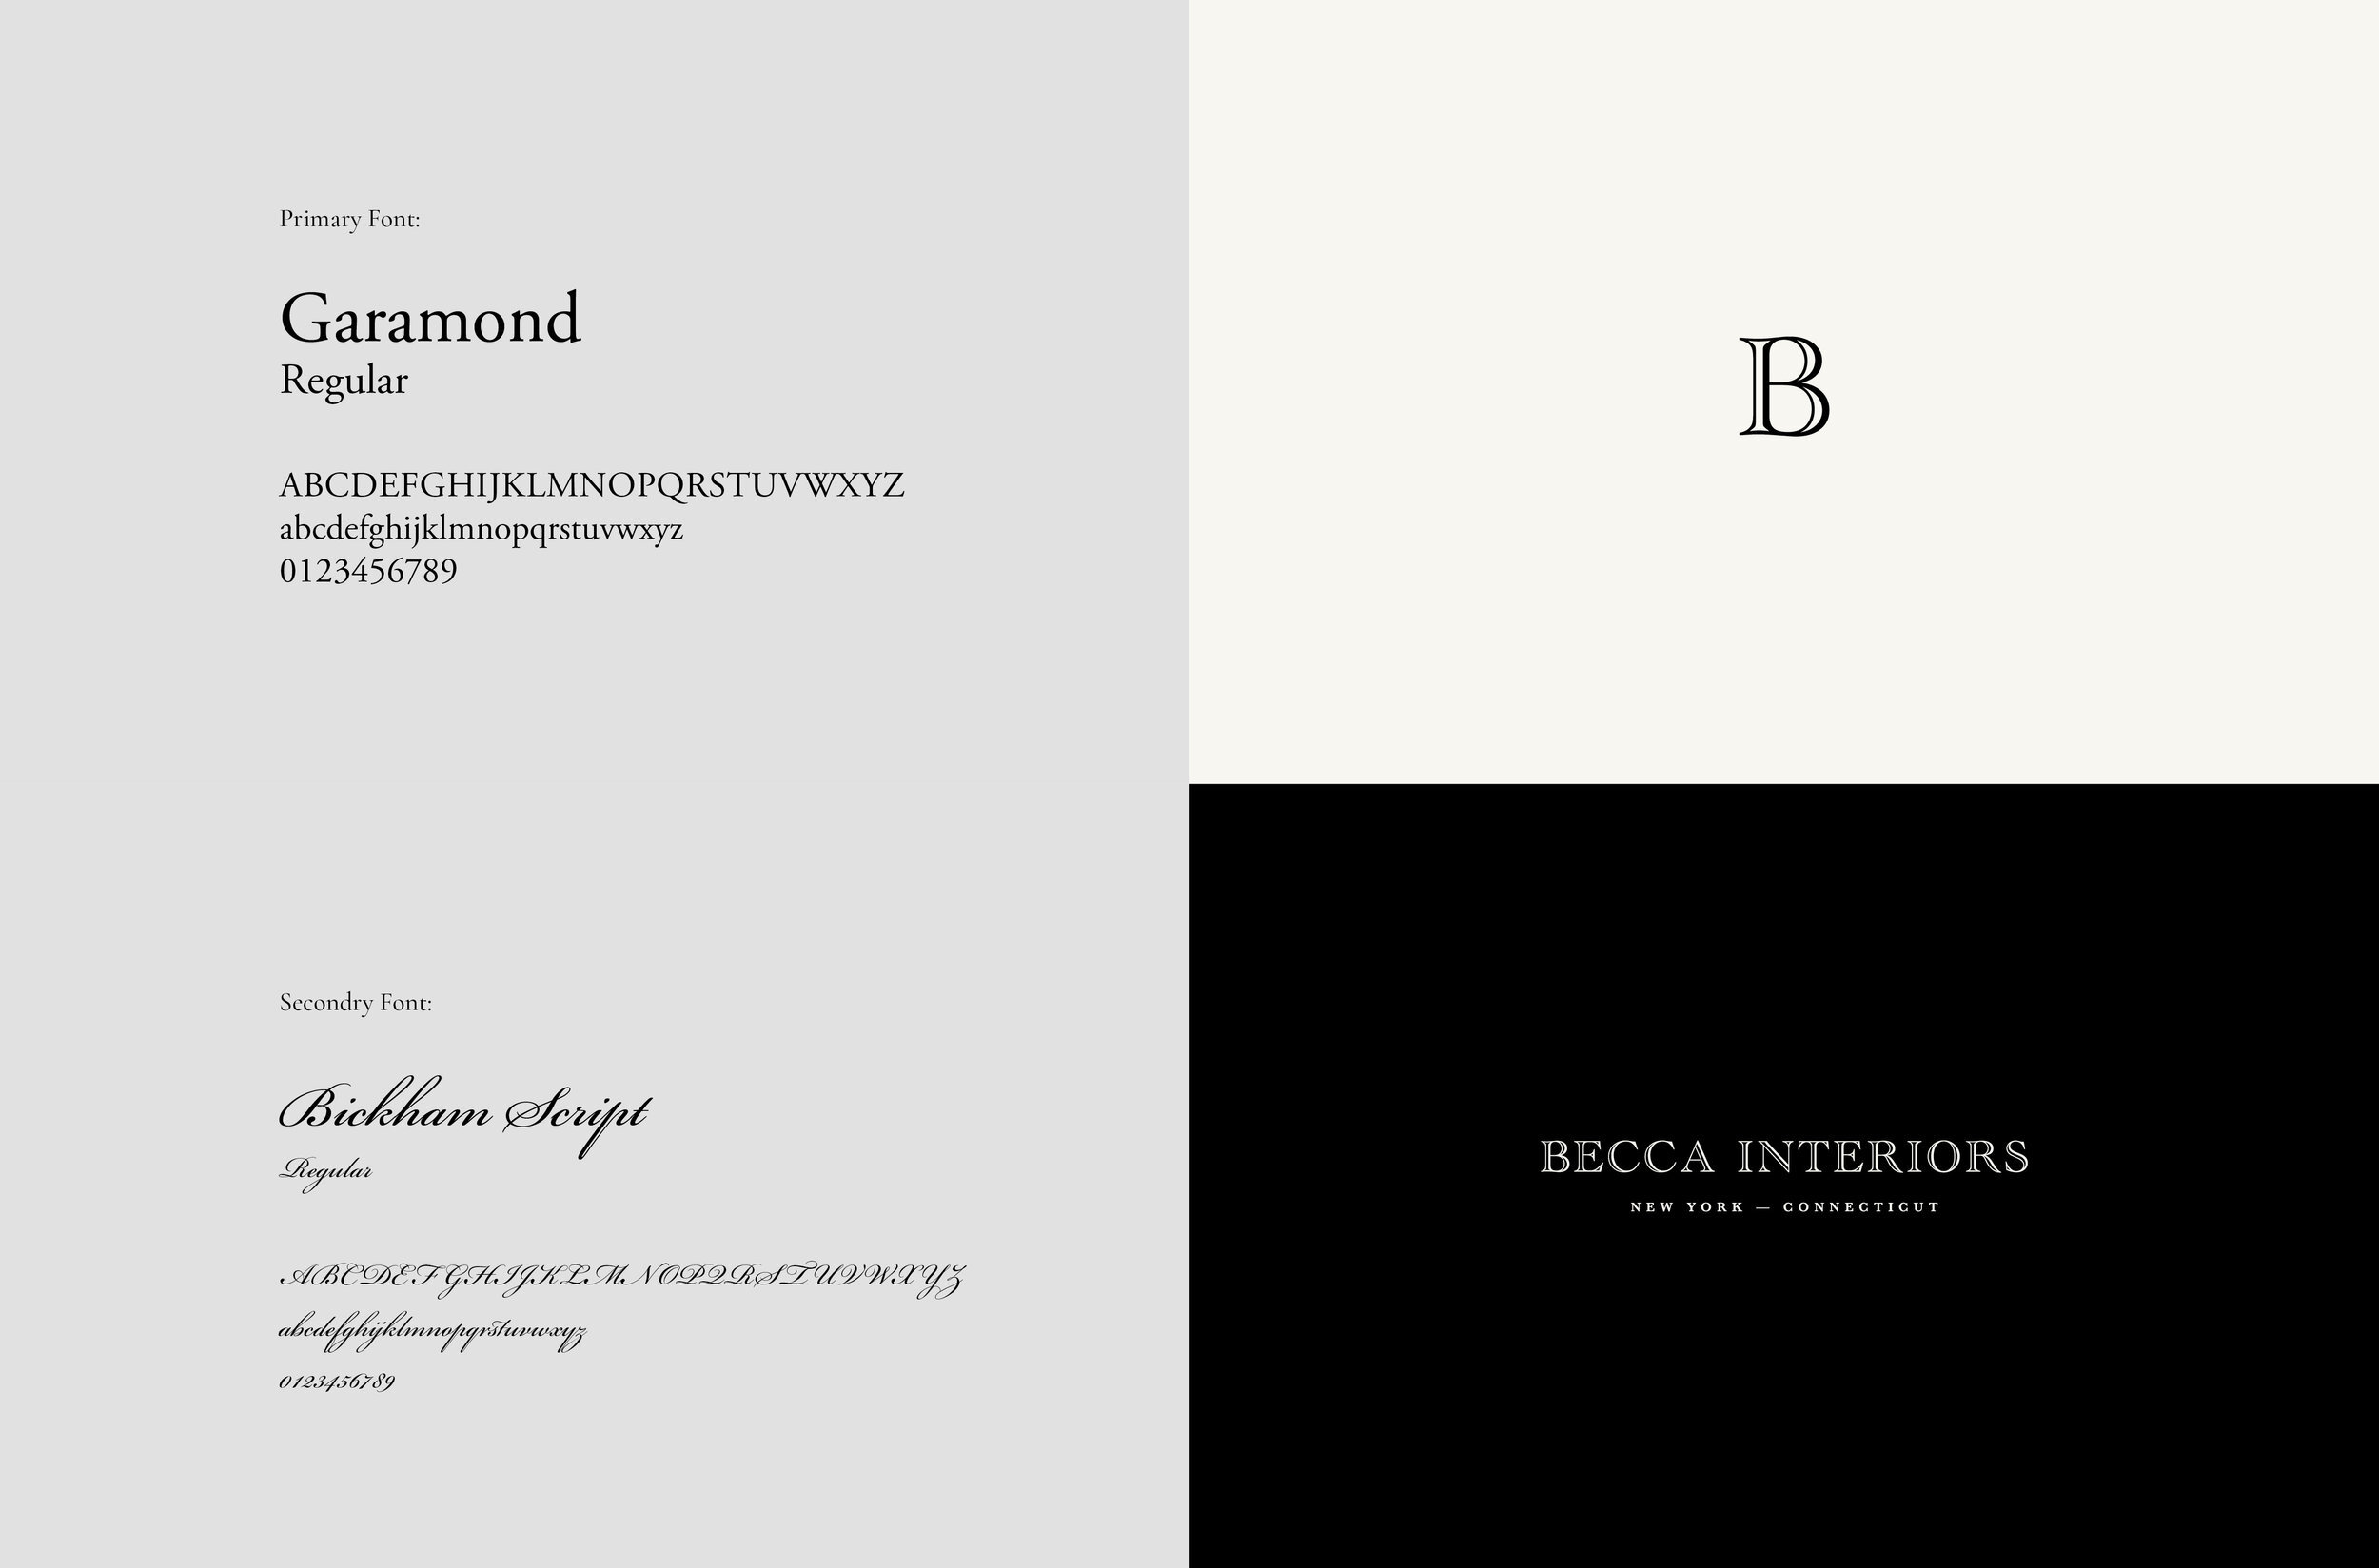 Becca+Interiors+Logo+Identiy+System.jpg